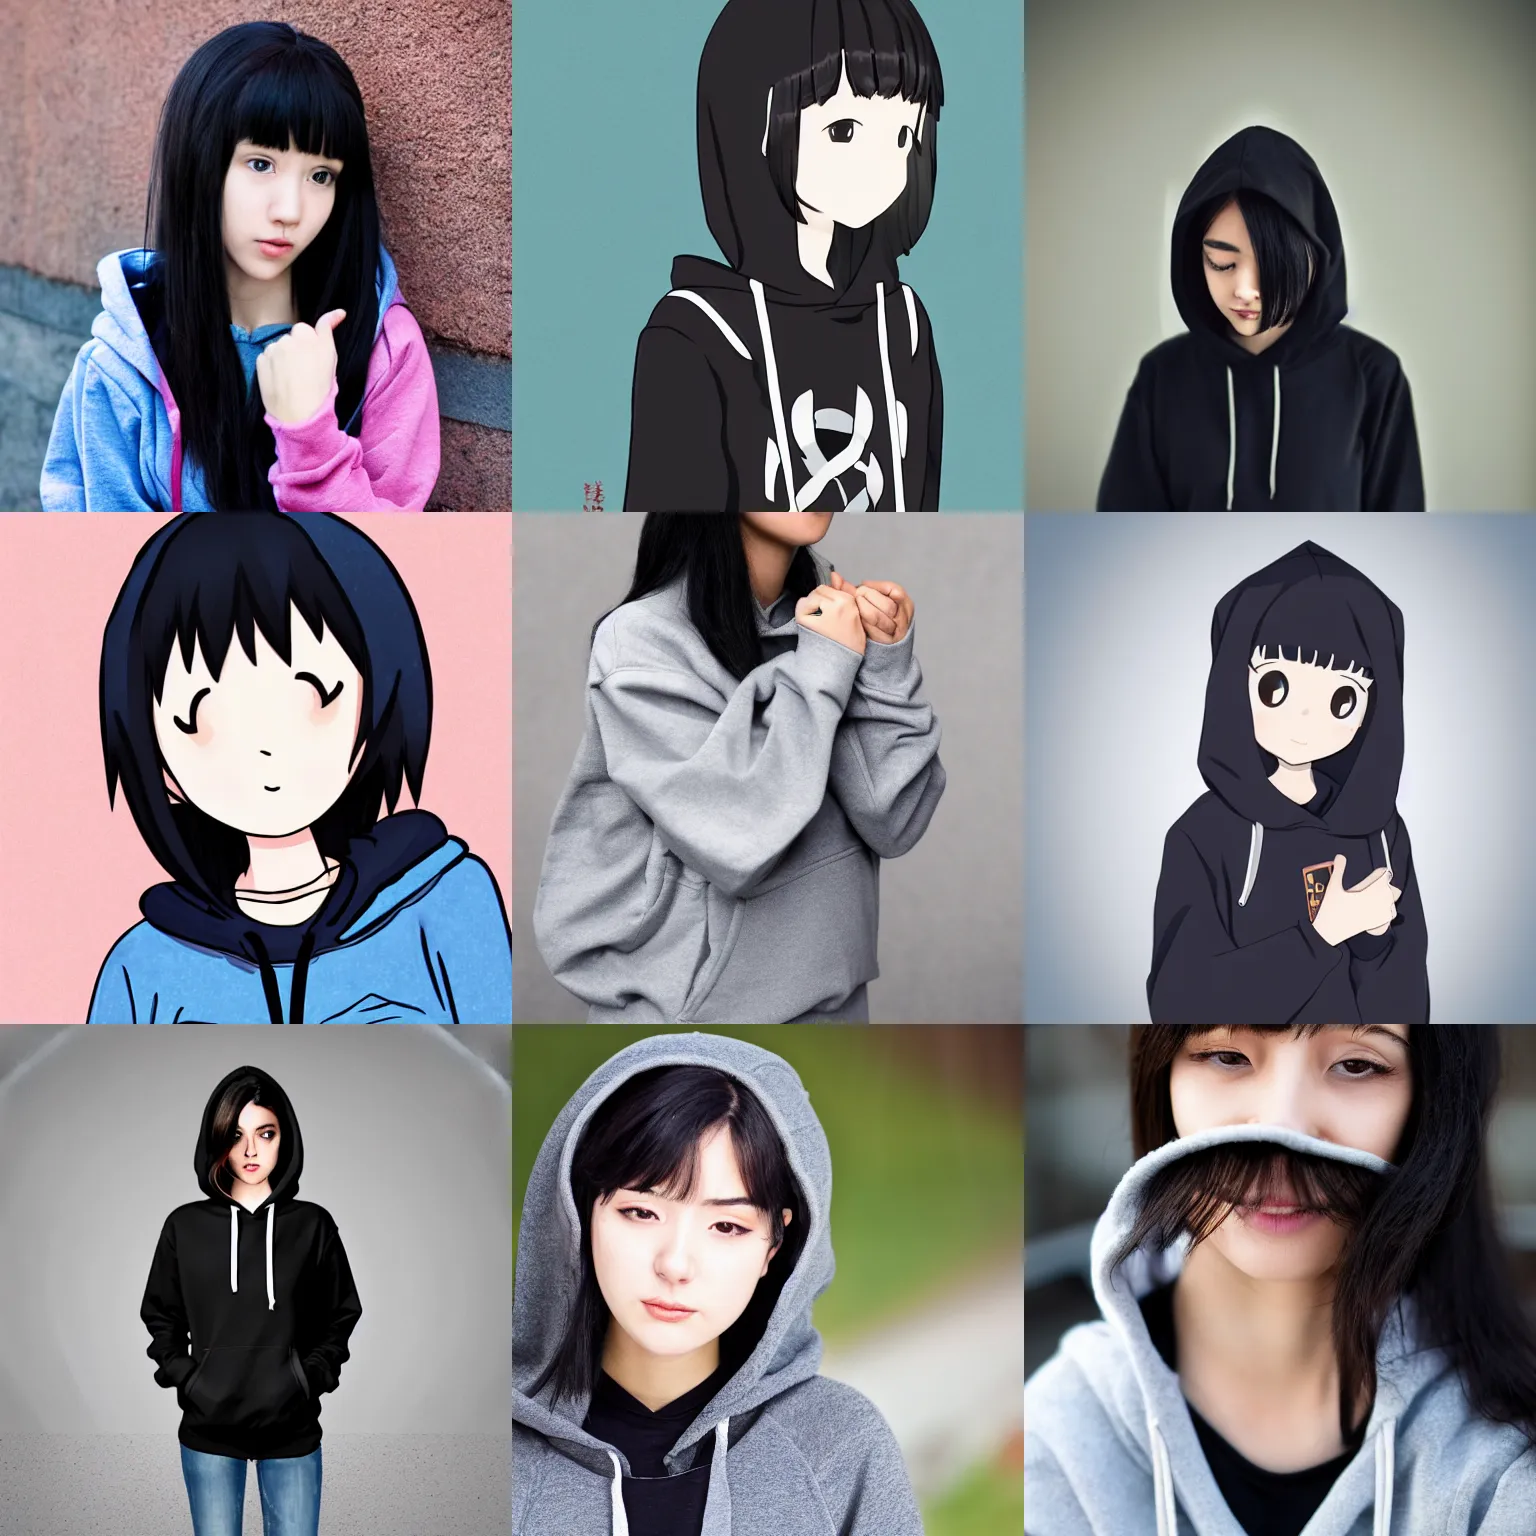 Prompt: black haired girl wearing hoodie, konachan